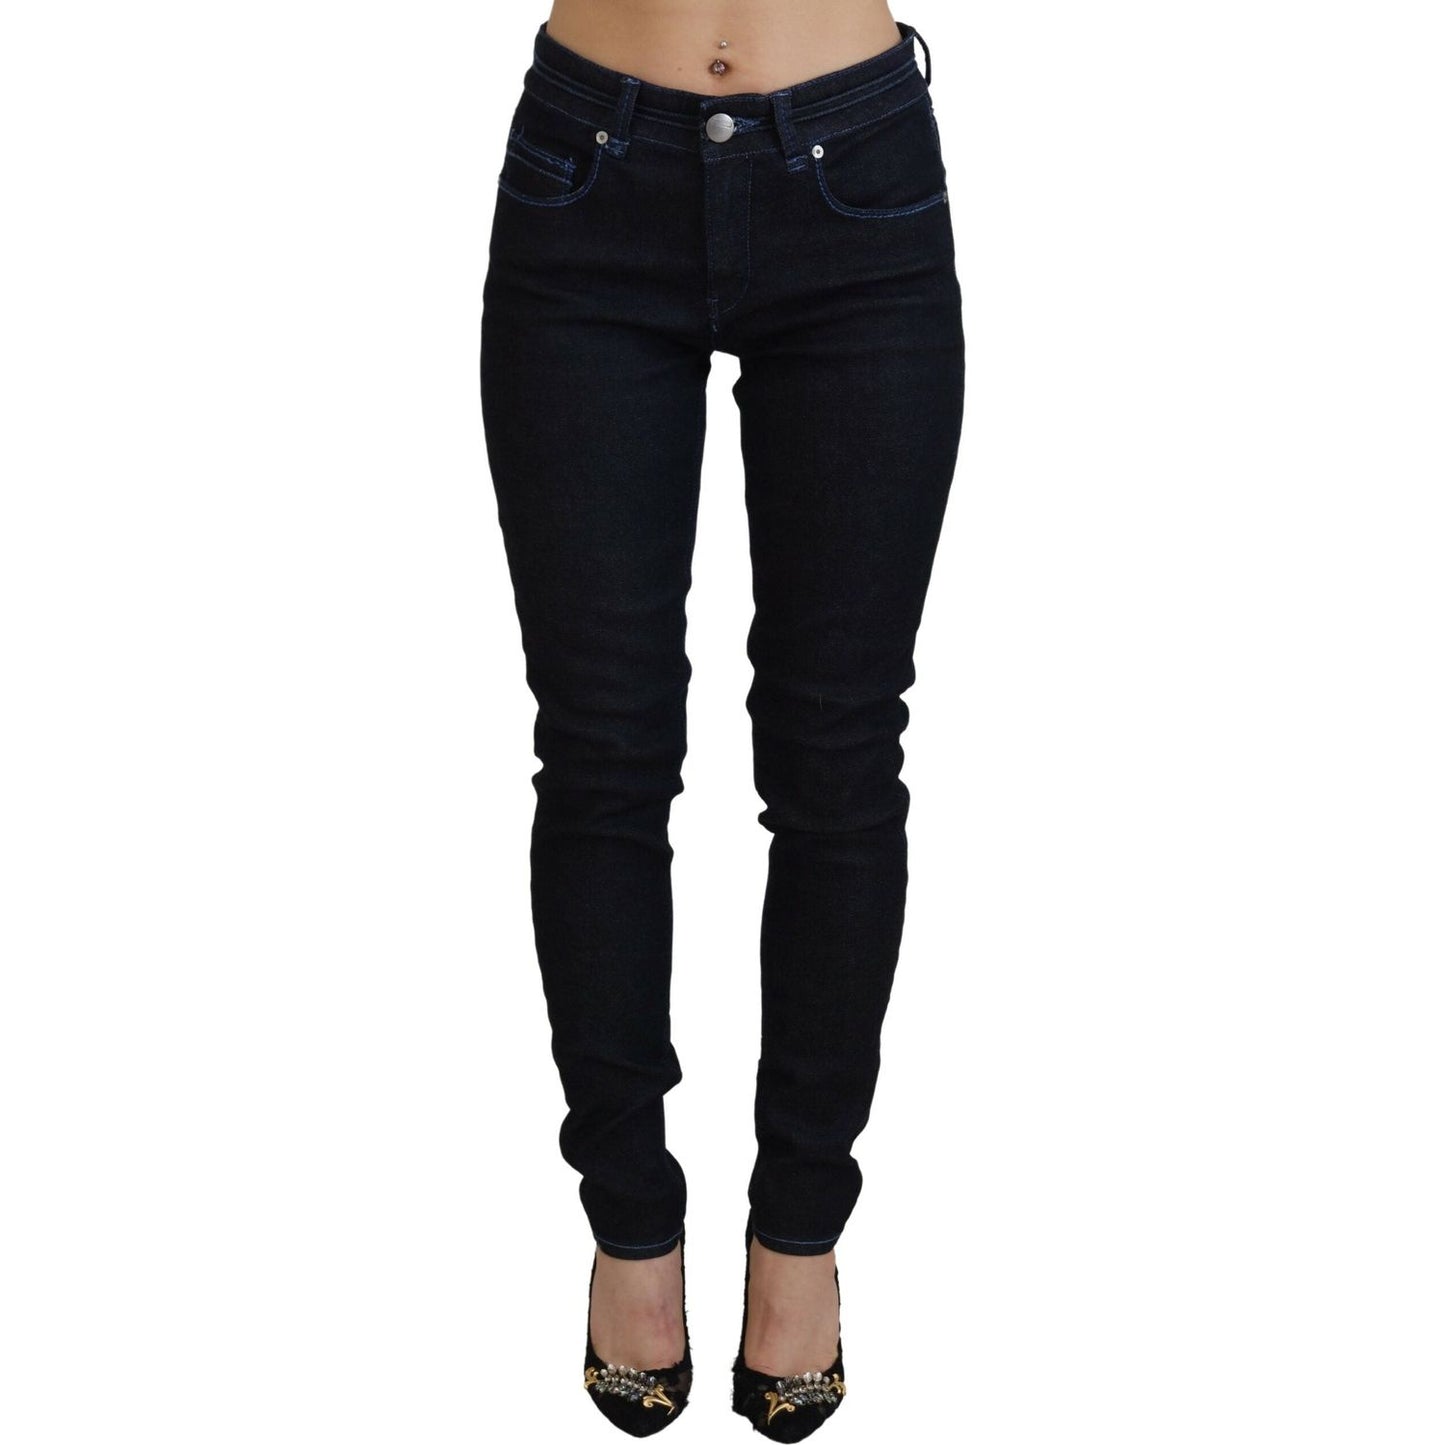 Acht Chic Slim-Fit Cotton Denim in Dark Blue dark-blue-low-waist-slim-fit-women-denim-jeans